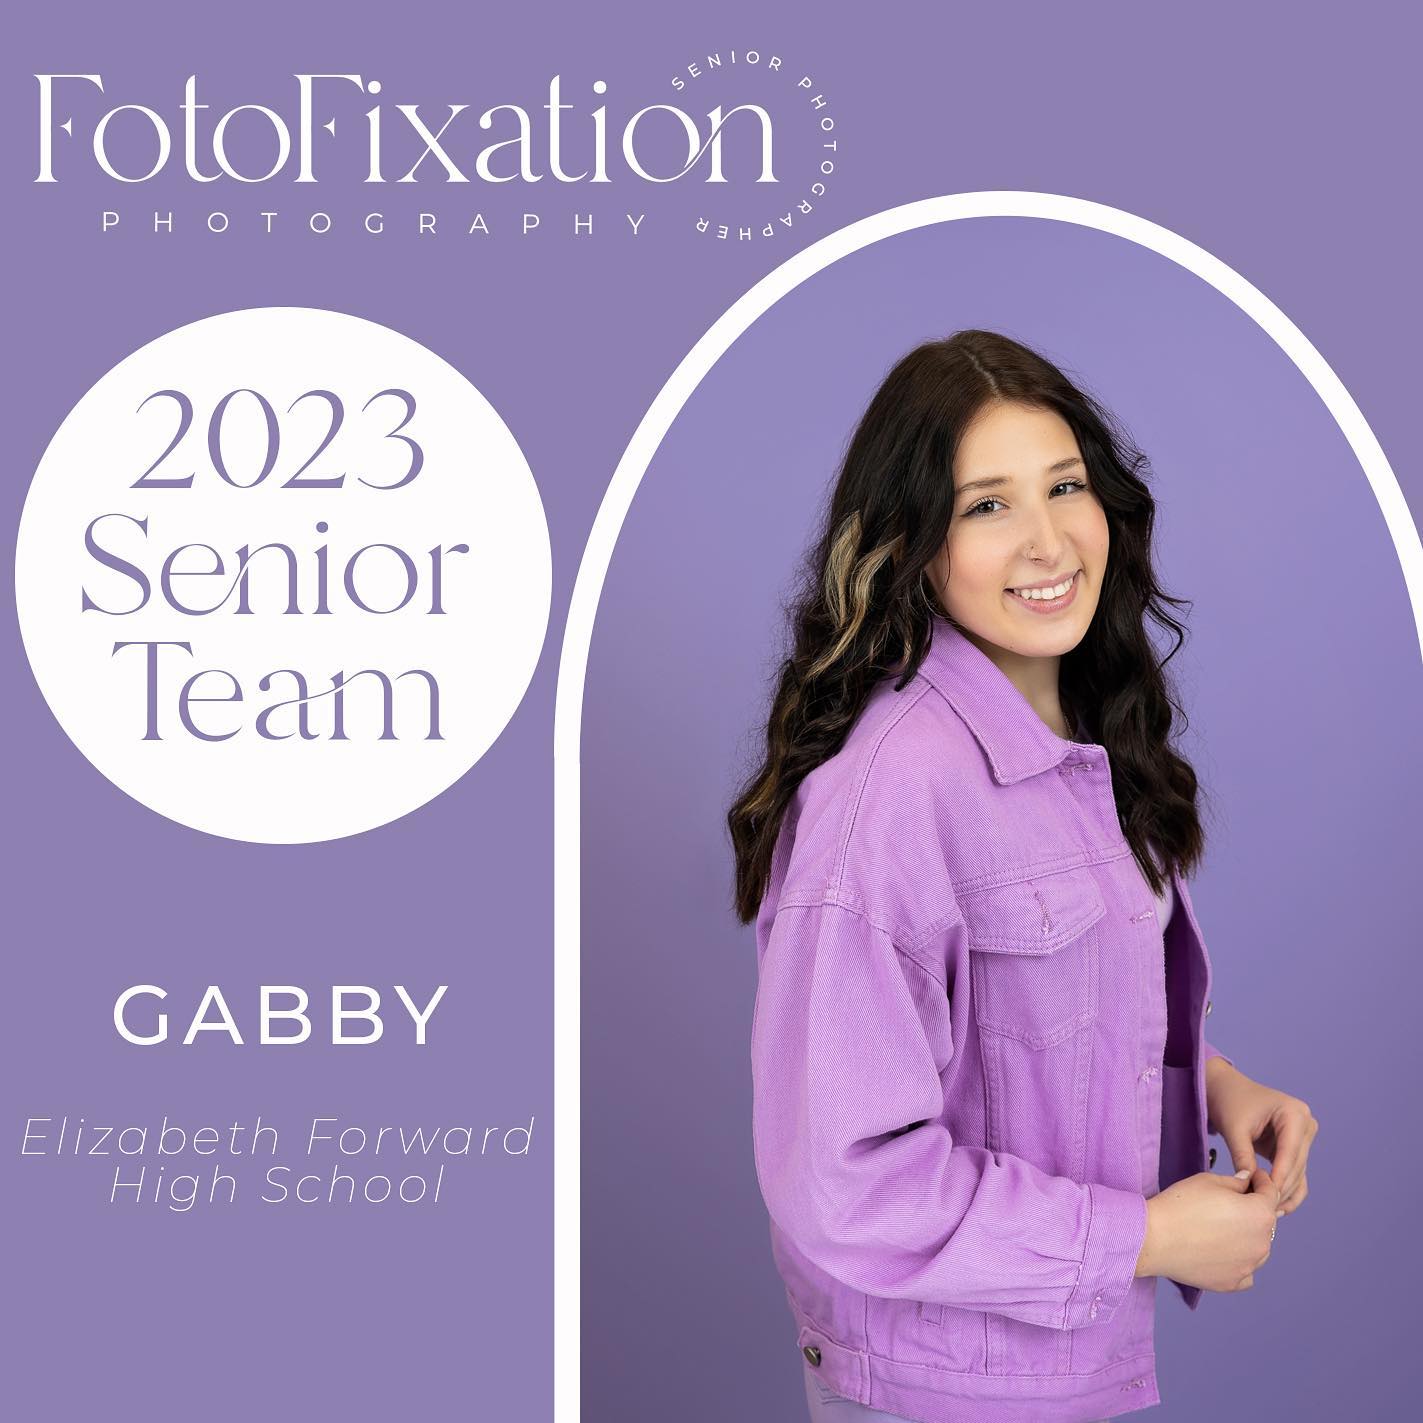 Fotofixation Photography - 2023 Senior Team - Gabby - Elizabeth Forward High School-2